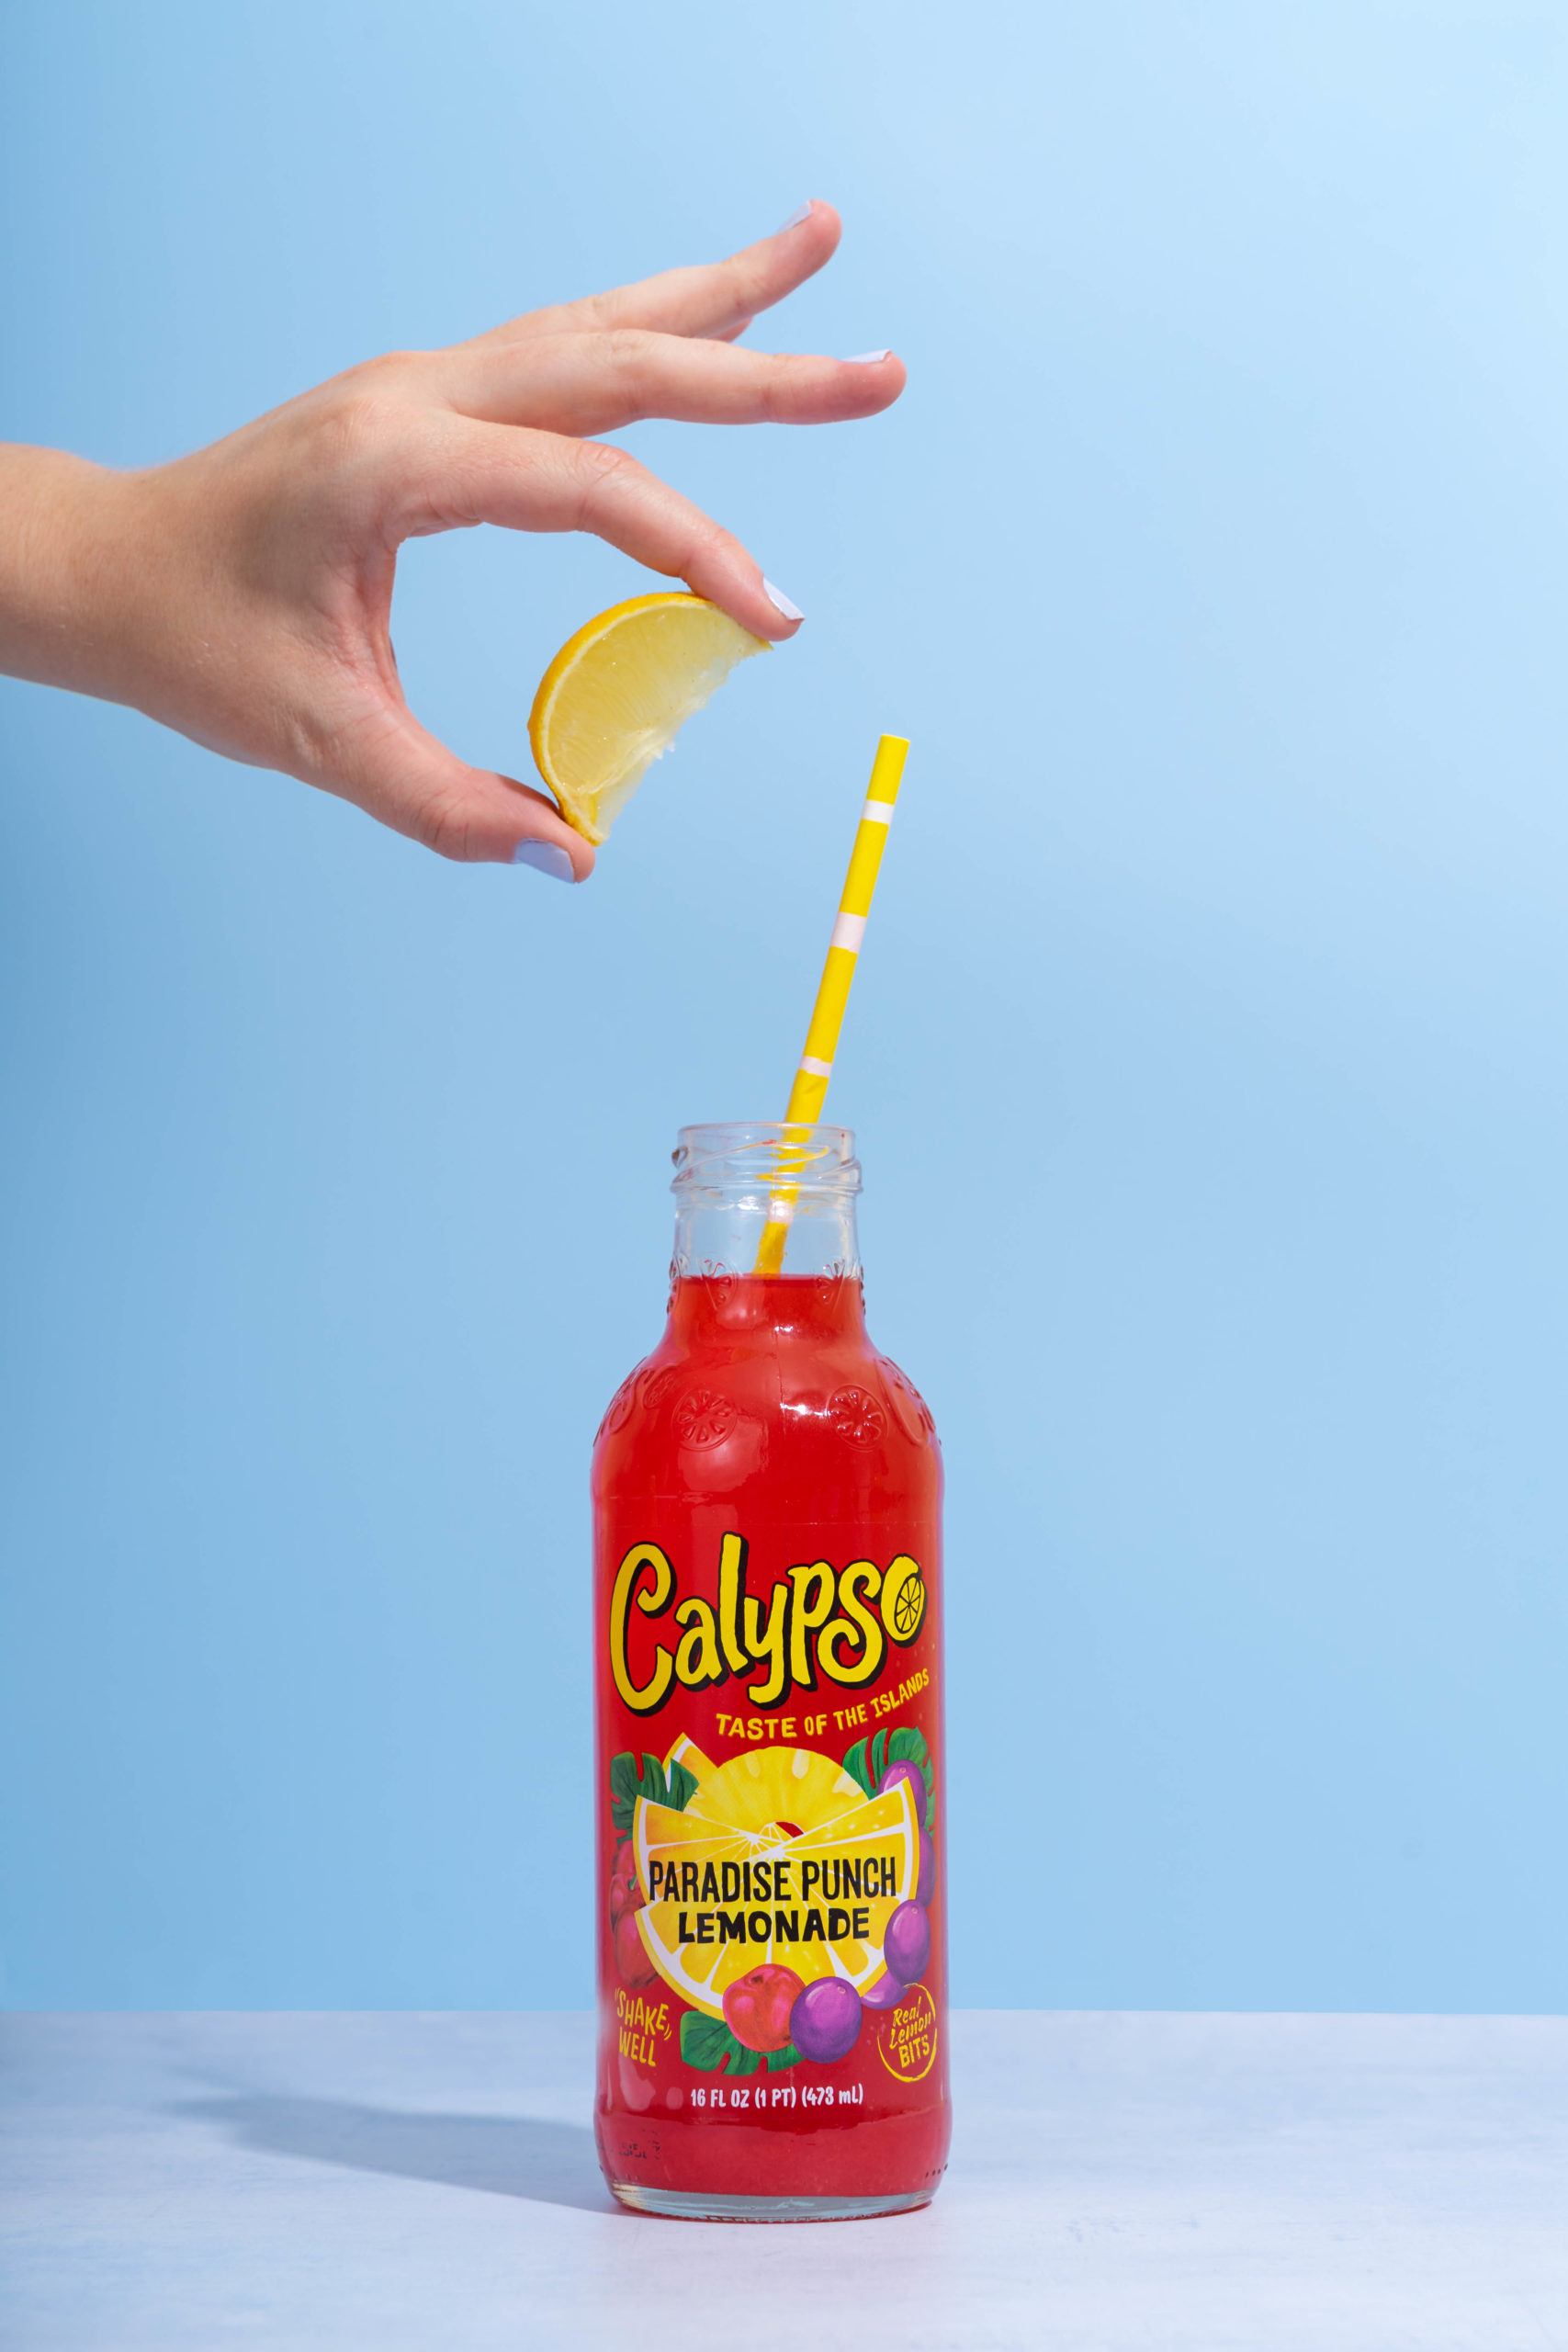 Calypso bottle with lemon